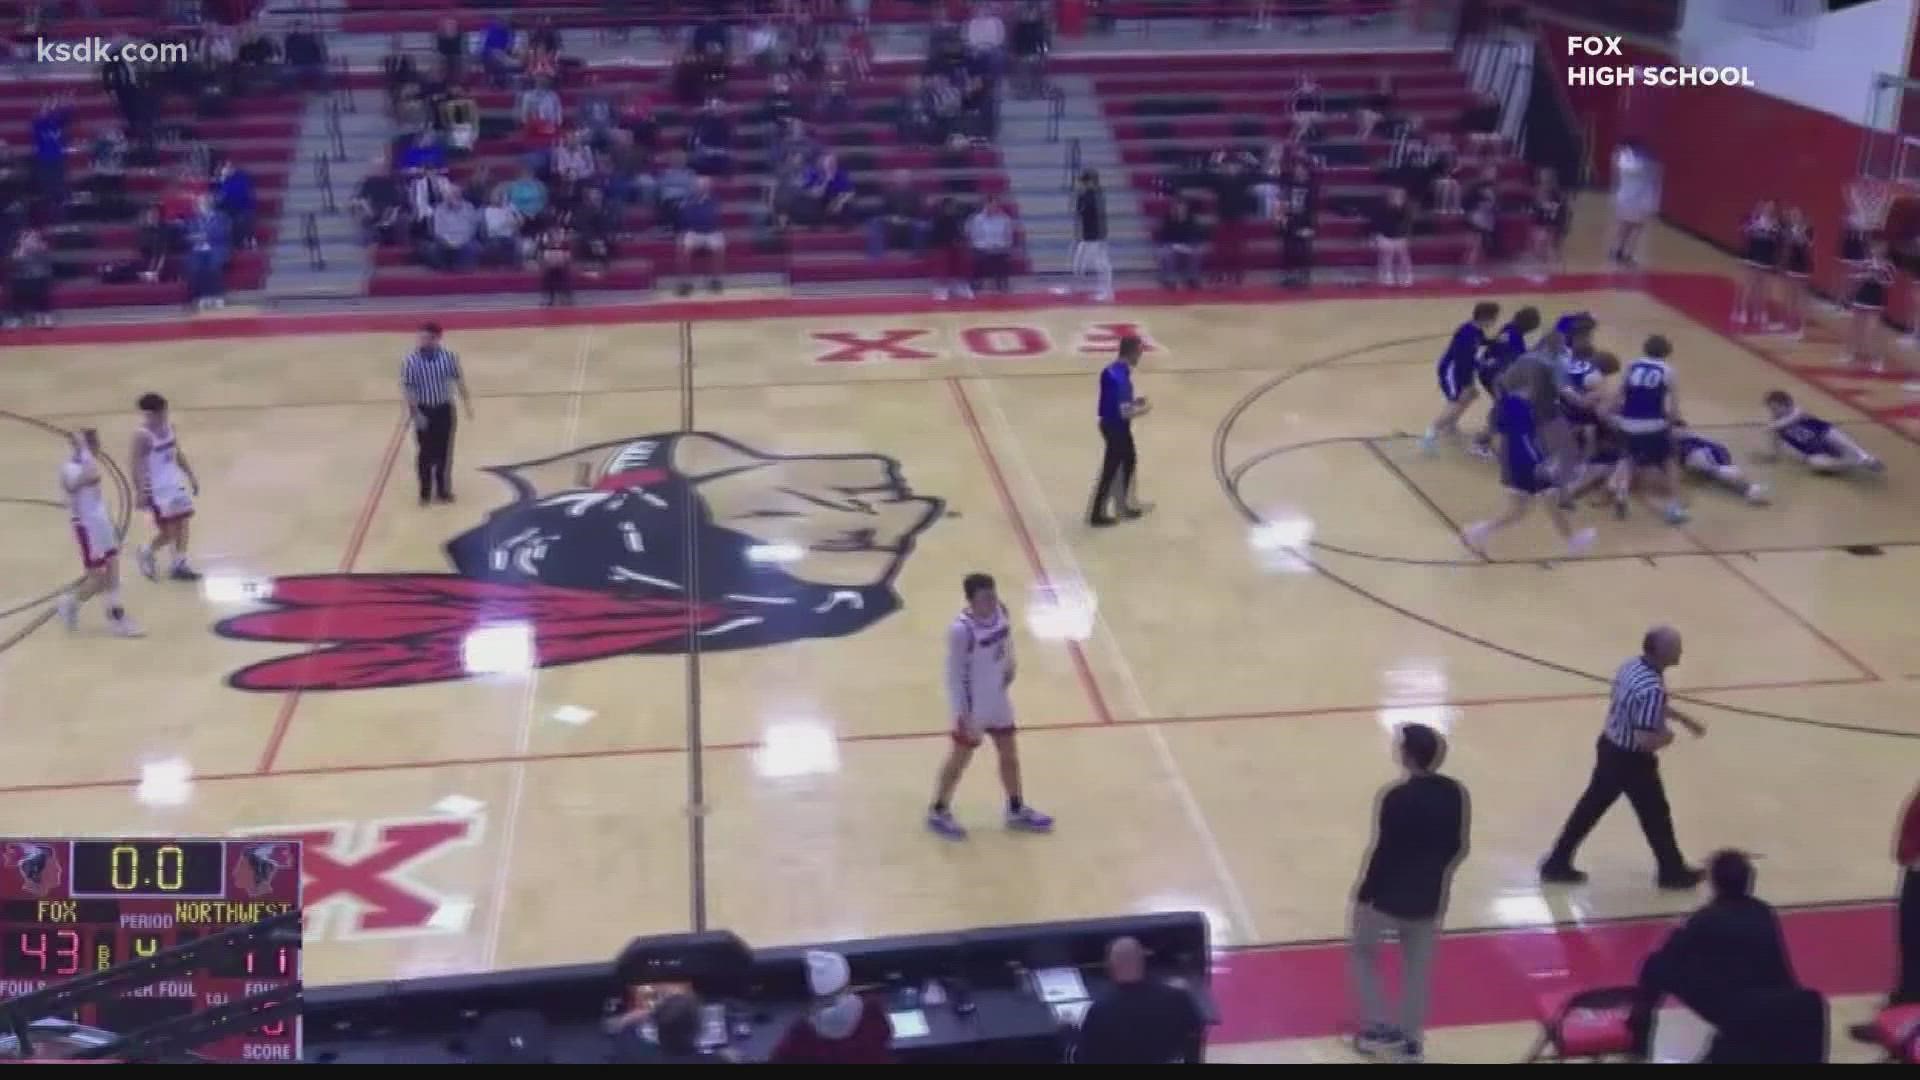 Northwest High School basketball sinks wild buzzer beater against Fox